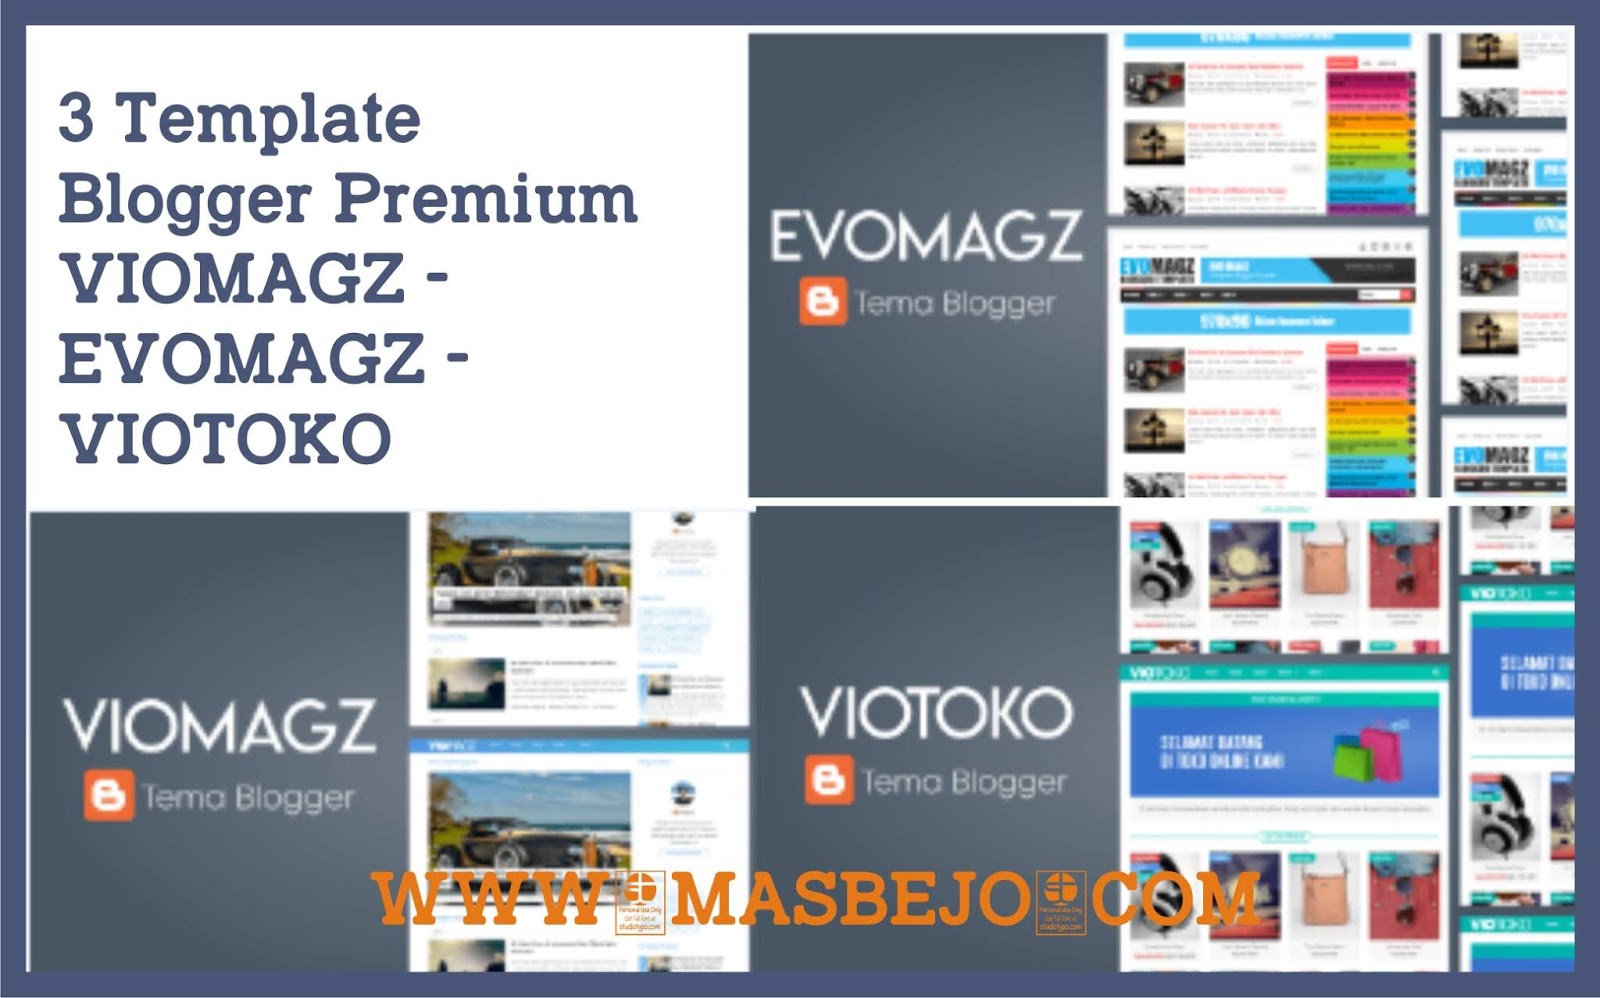 Bisnis Template Blogger Premium